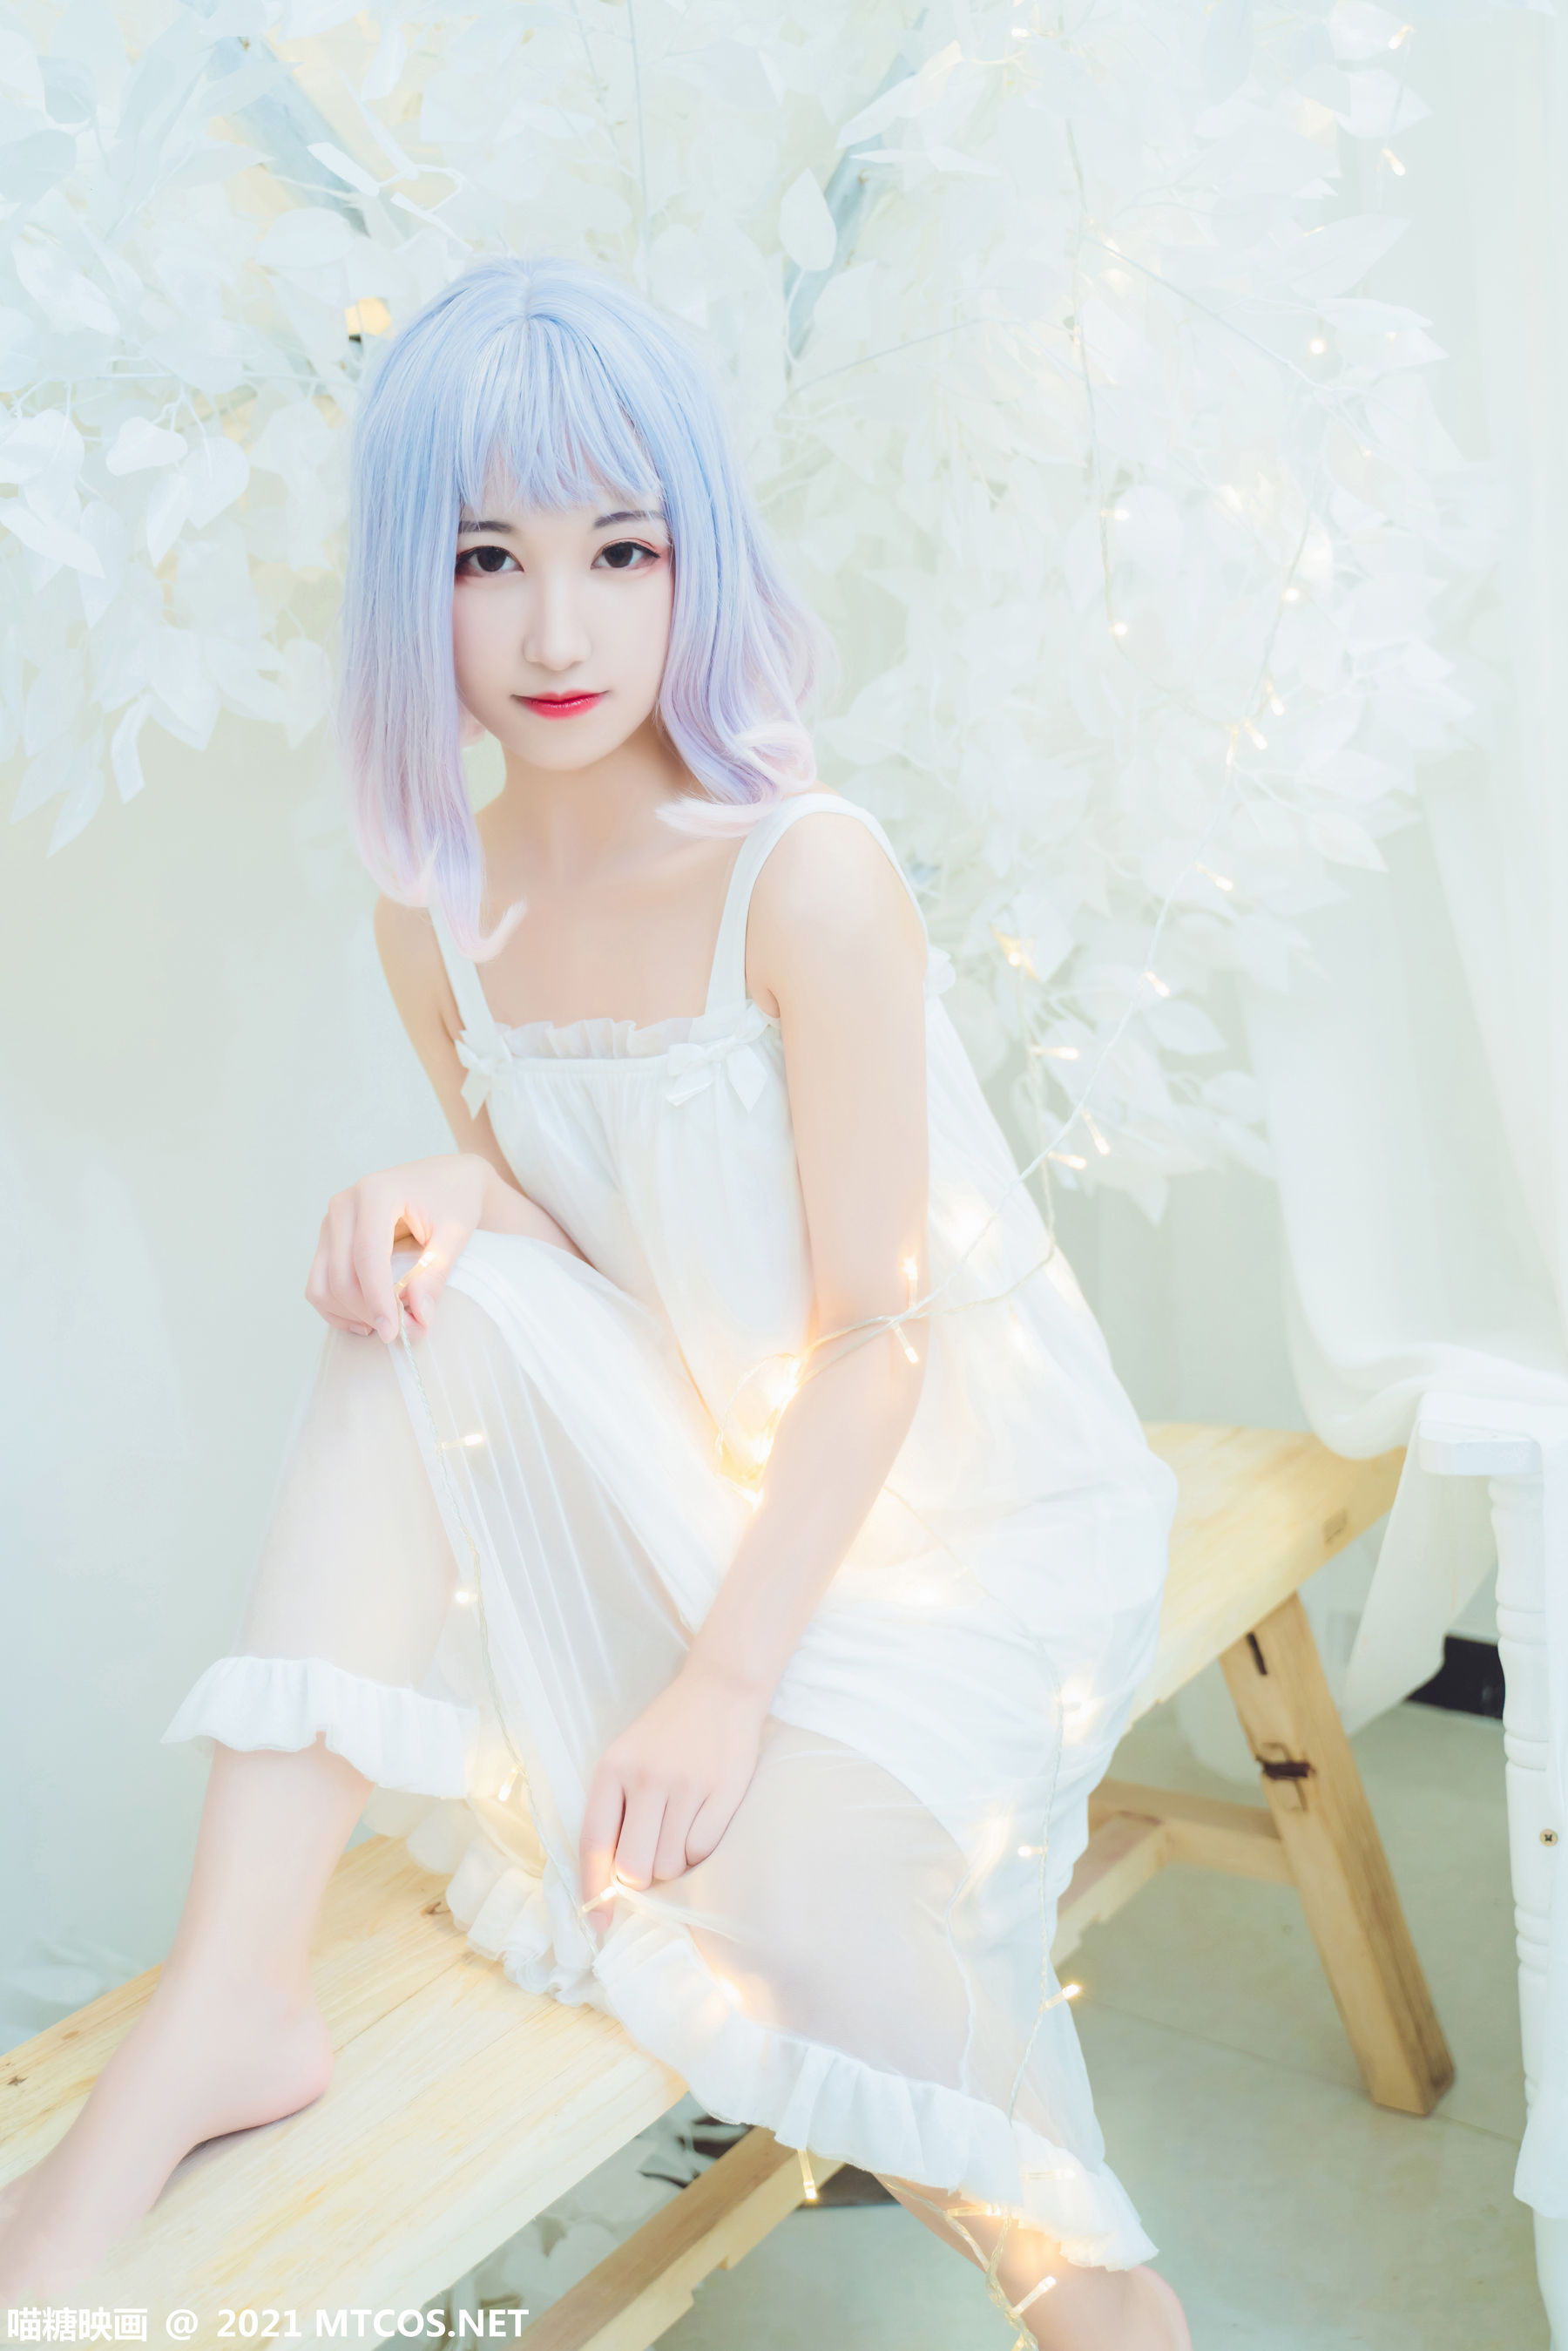 [糖] Vol.411 white water skirt photo set